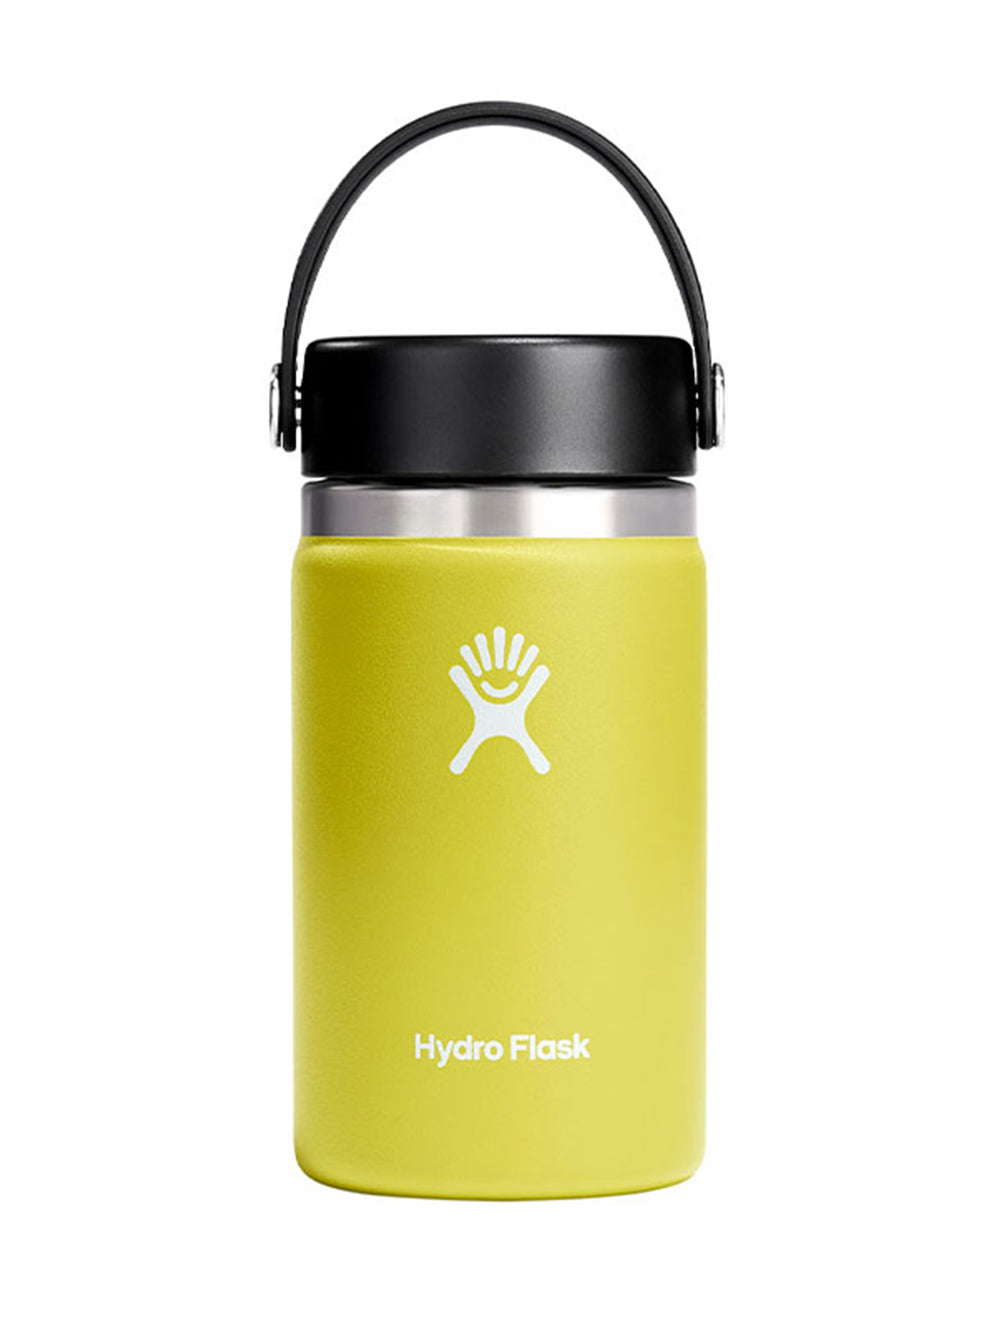 [Hydro Flask] HYDRATION ワイドマウス【12oz】 (354ml) / 日本正規品 ハイドロフラスク タンブラー 断熱ボトル 23FW 5089021 60_1 - Puravida!プラヴィダ